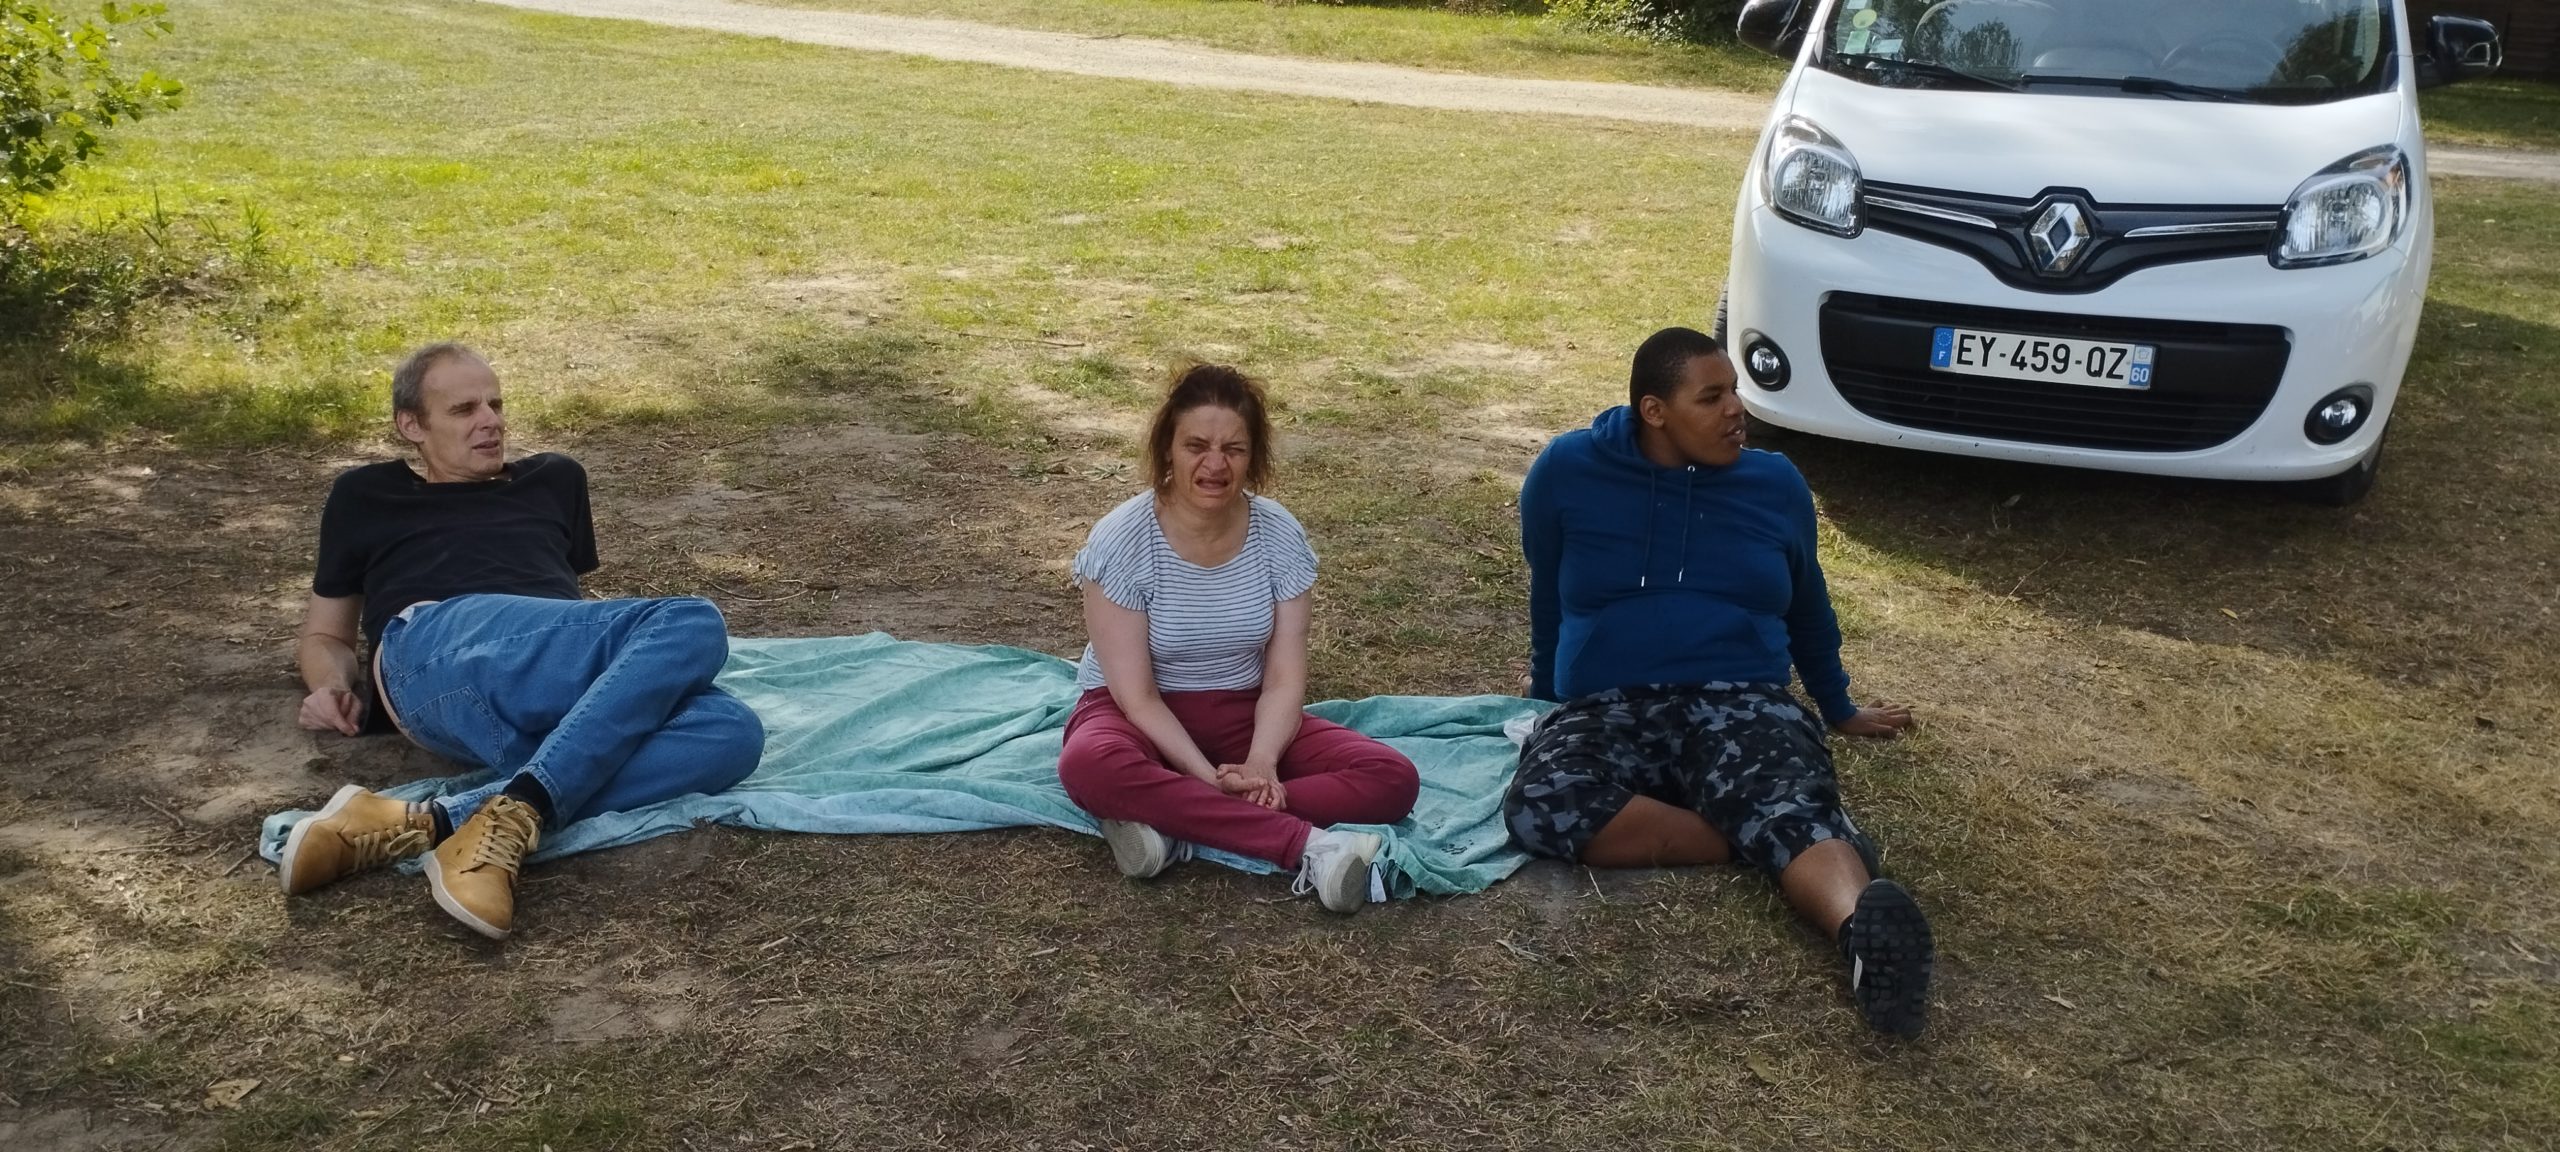 3 résidents d'Halatte se reposent dans l'herbe lors de la sortie pêche